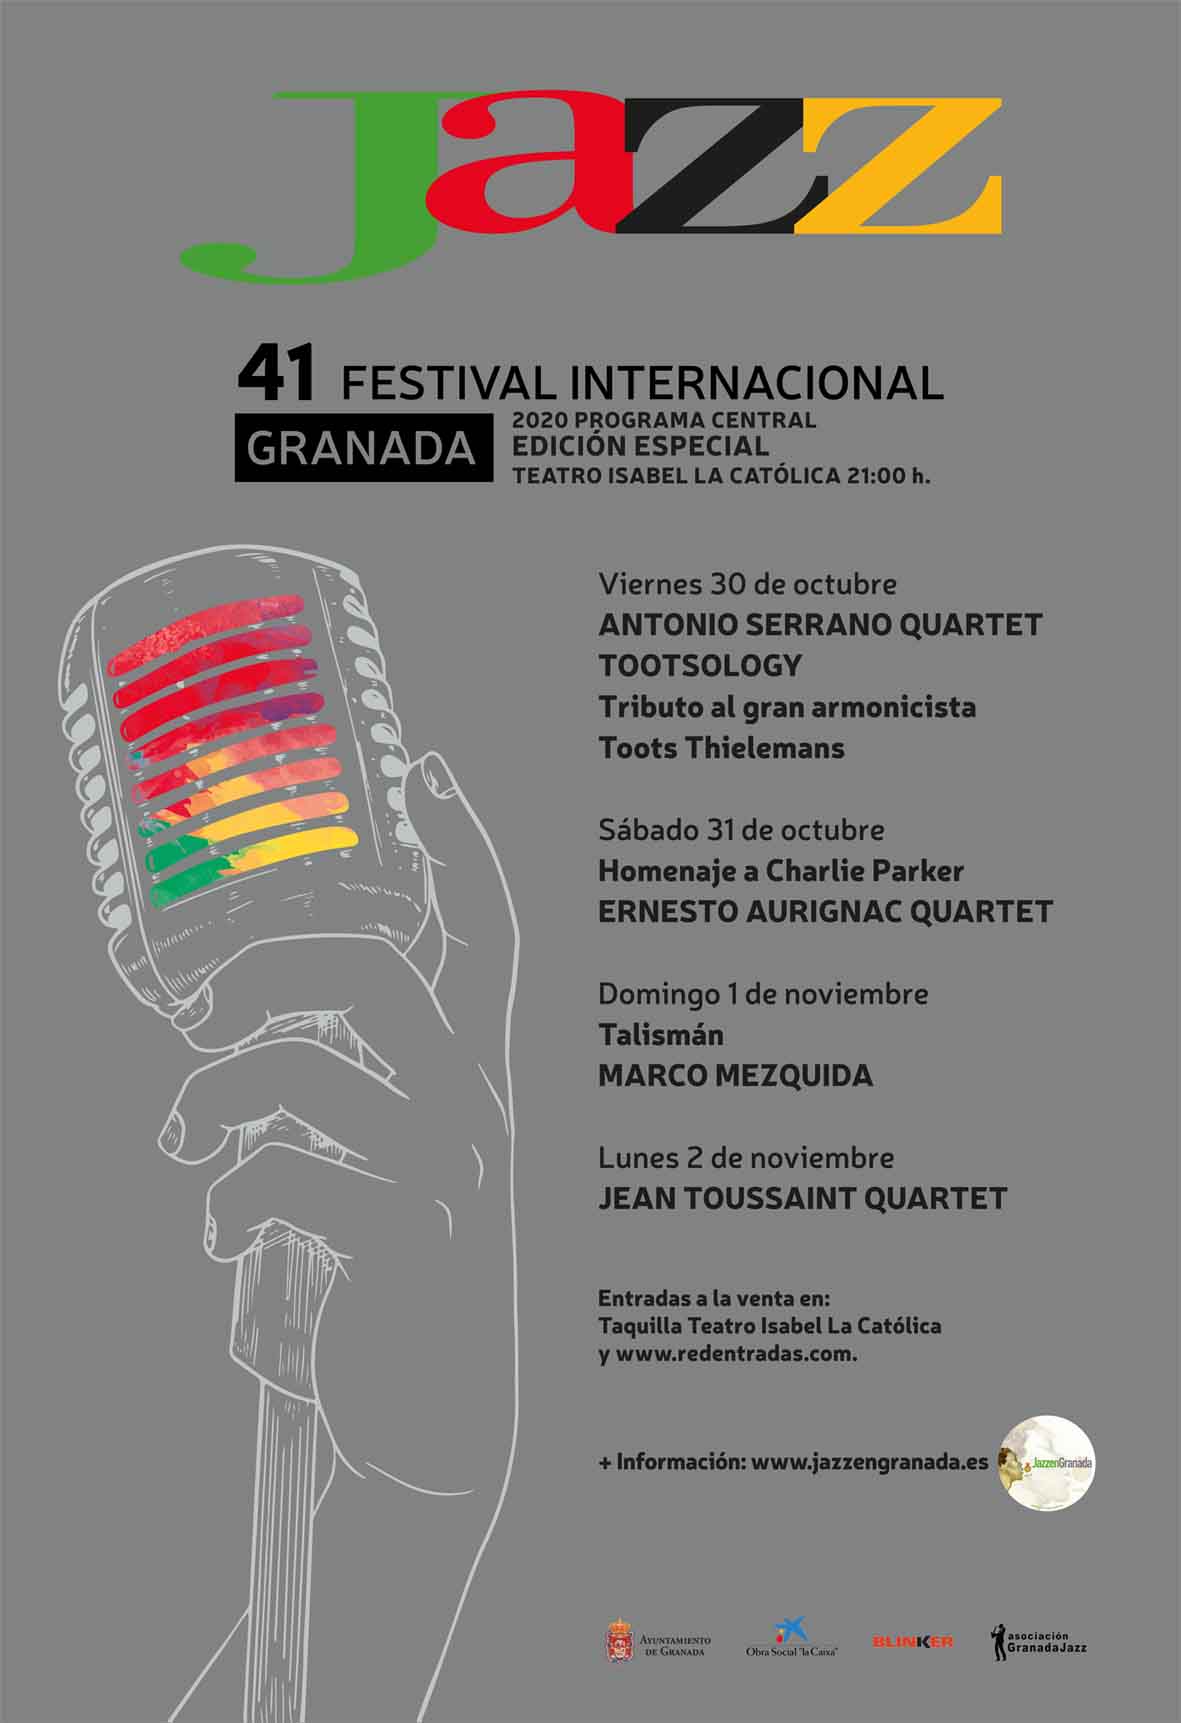 Festival de Jazz de Granada 2020, conciertos, cartel y programación completa